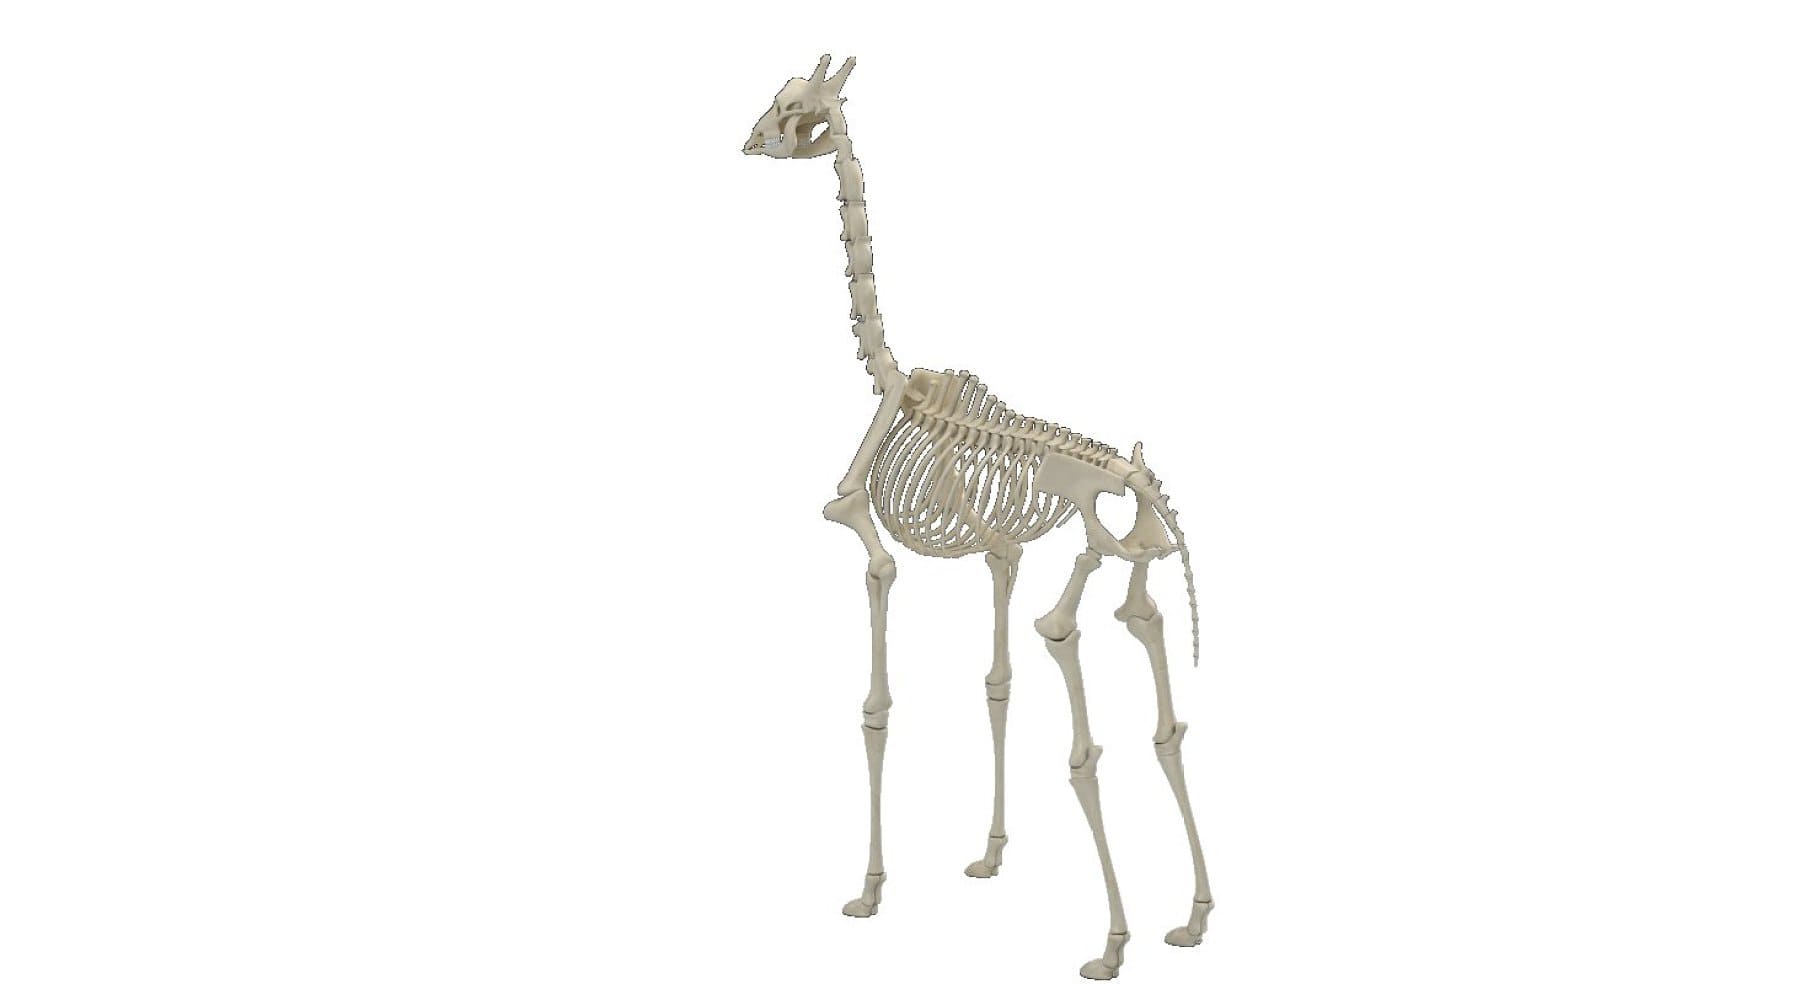 Image of the left side of a giraffe skeleton.